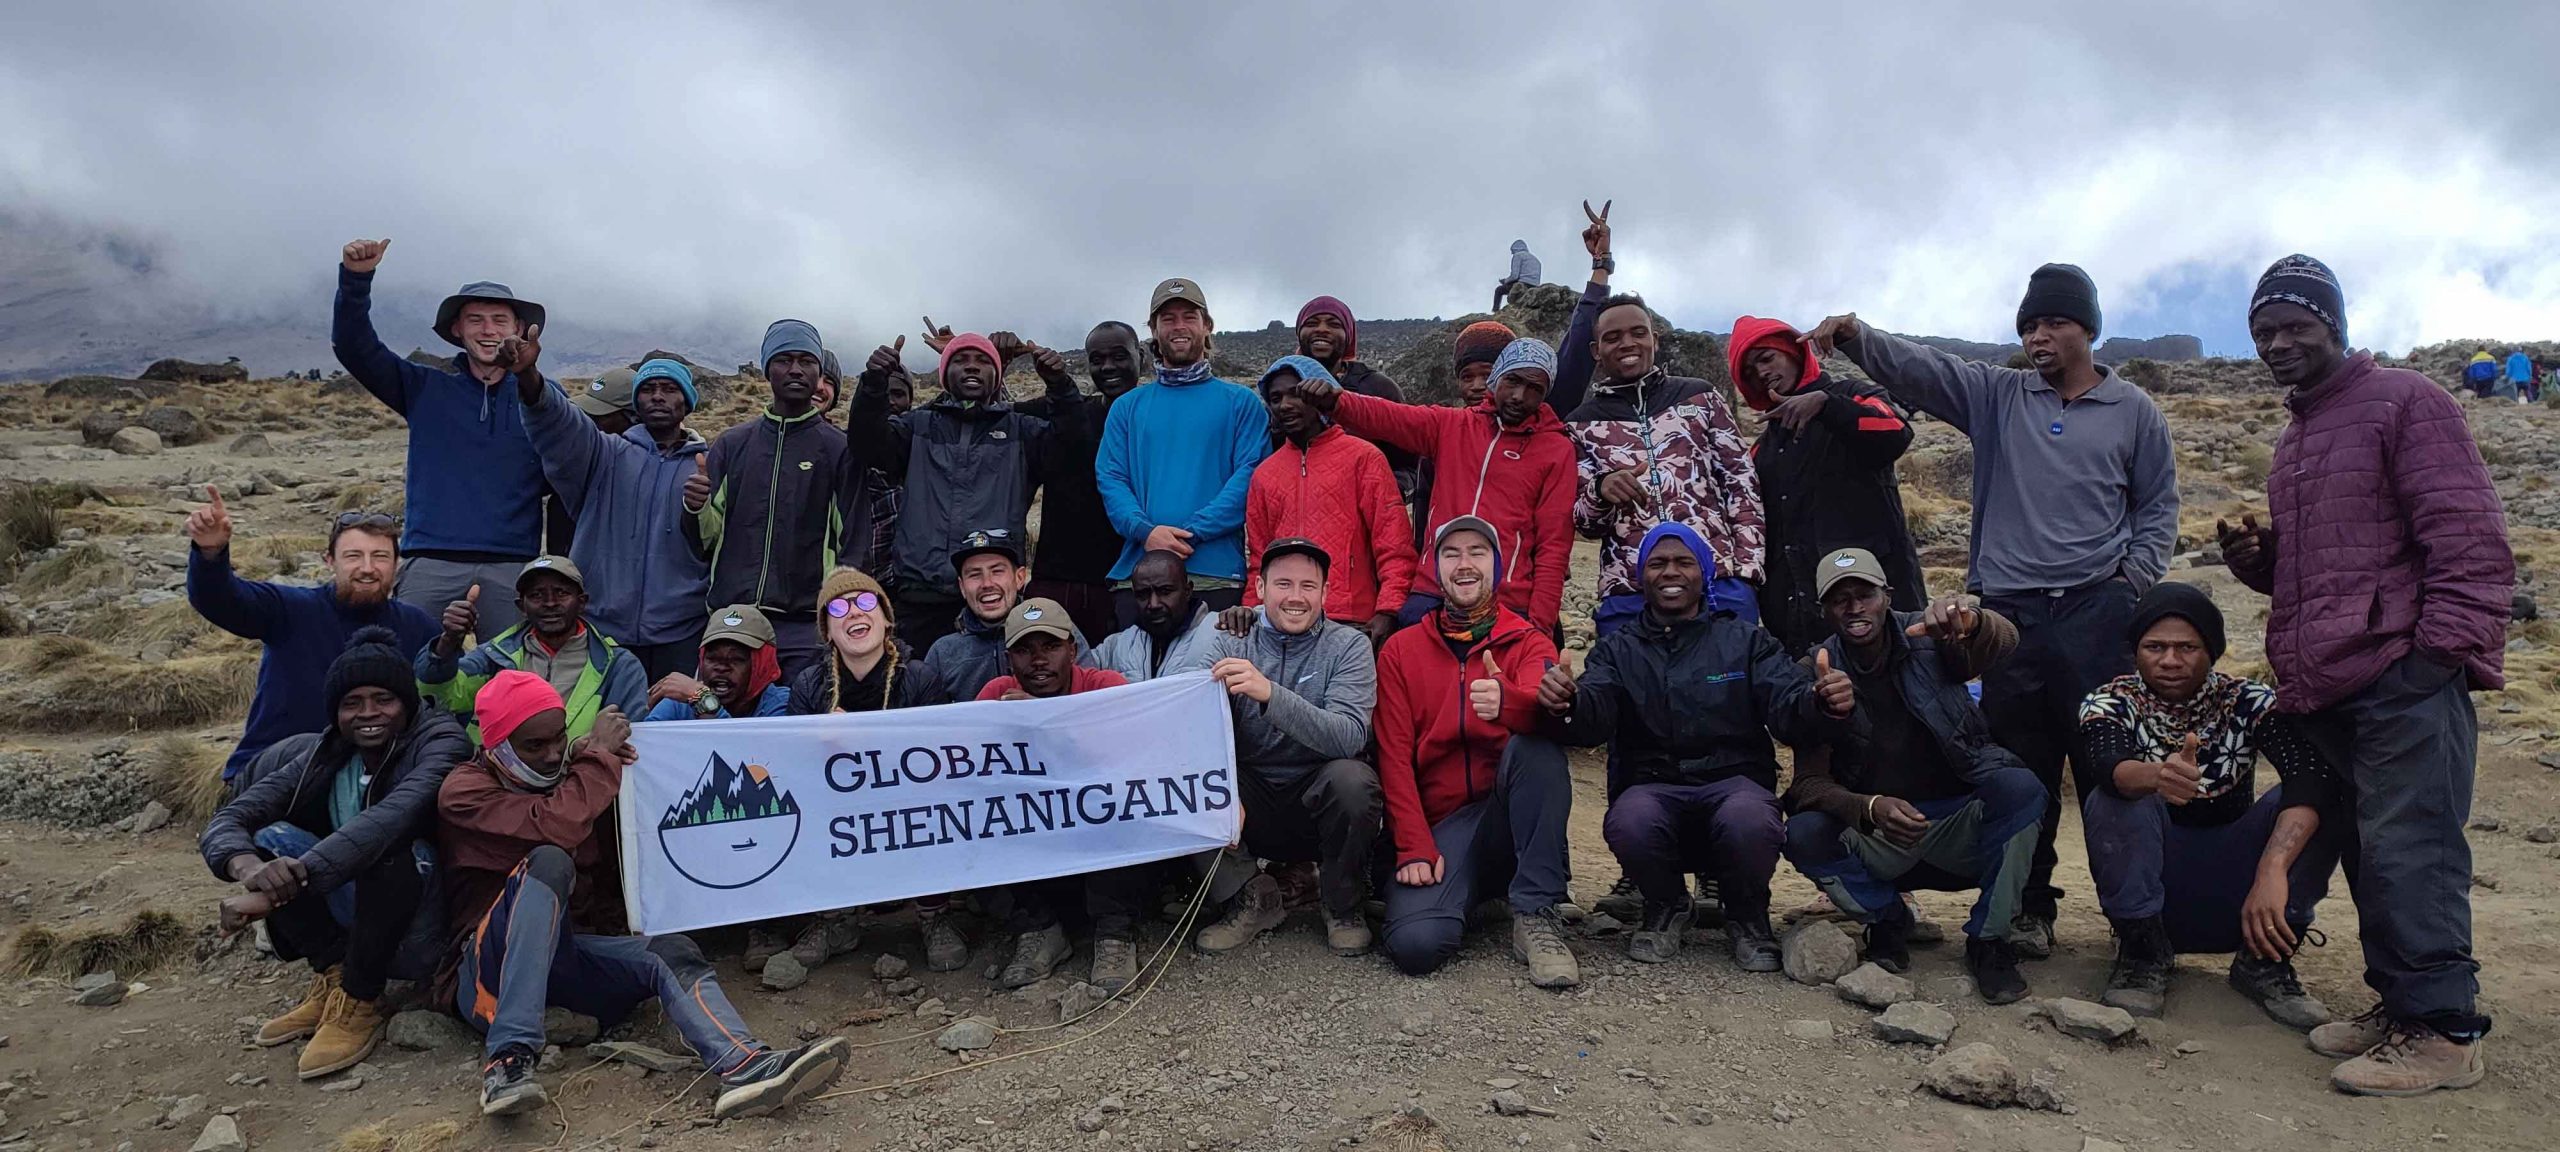 kilimanjaro expedition company